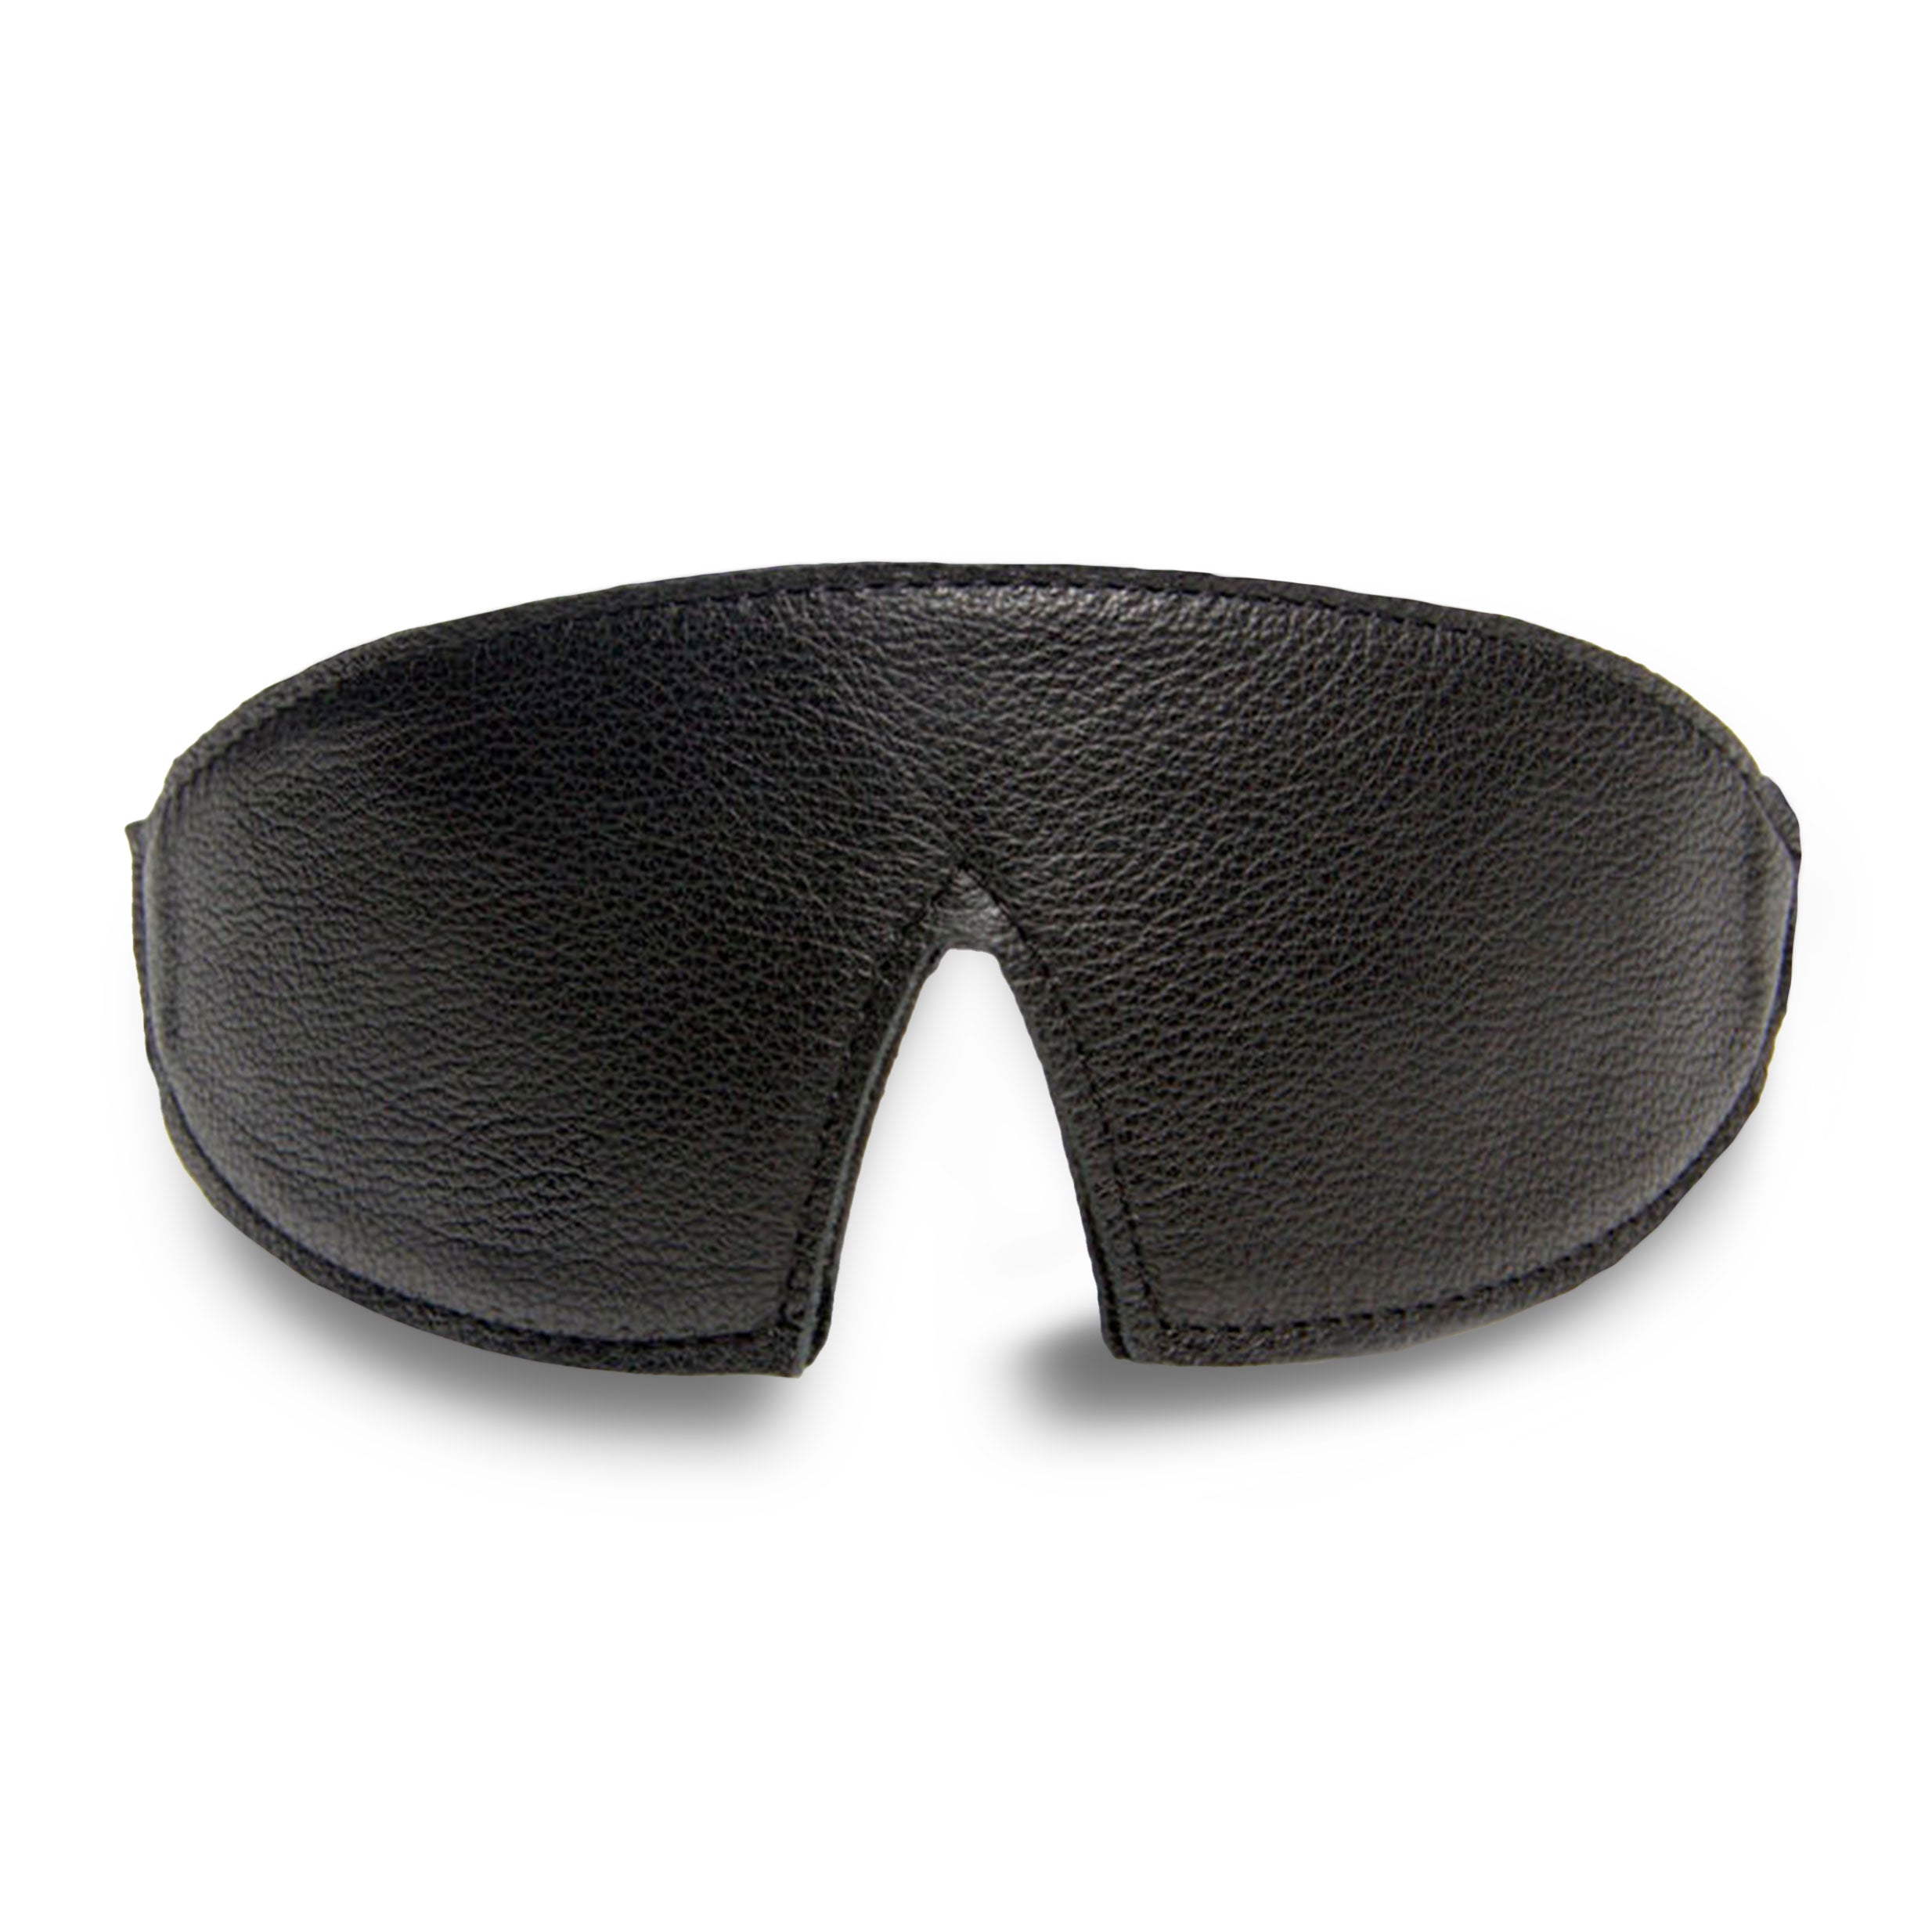 Luxury Leather Bondage Blindfold Black